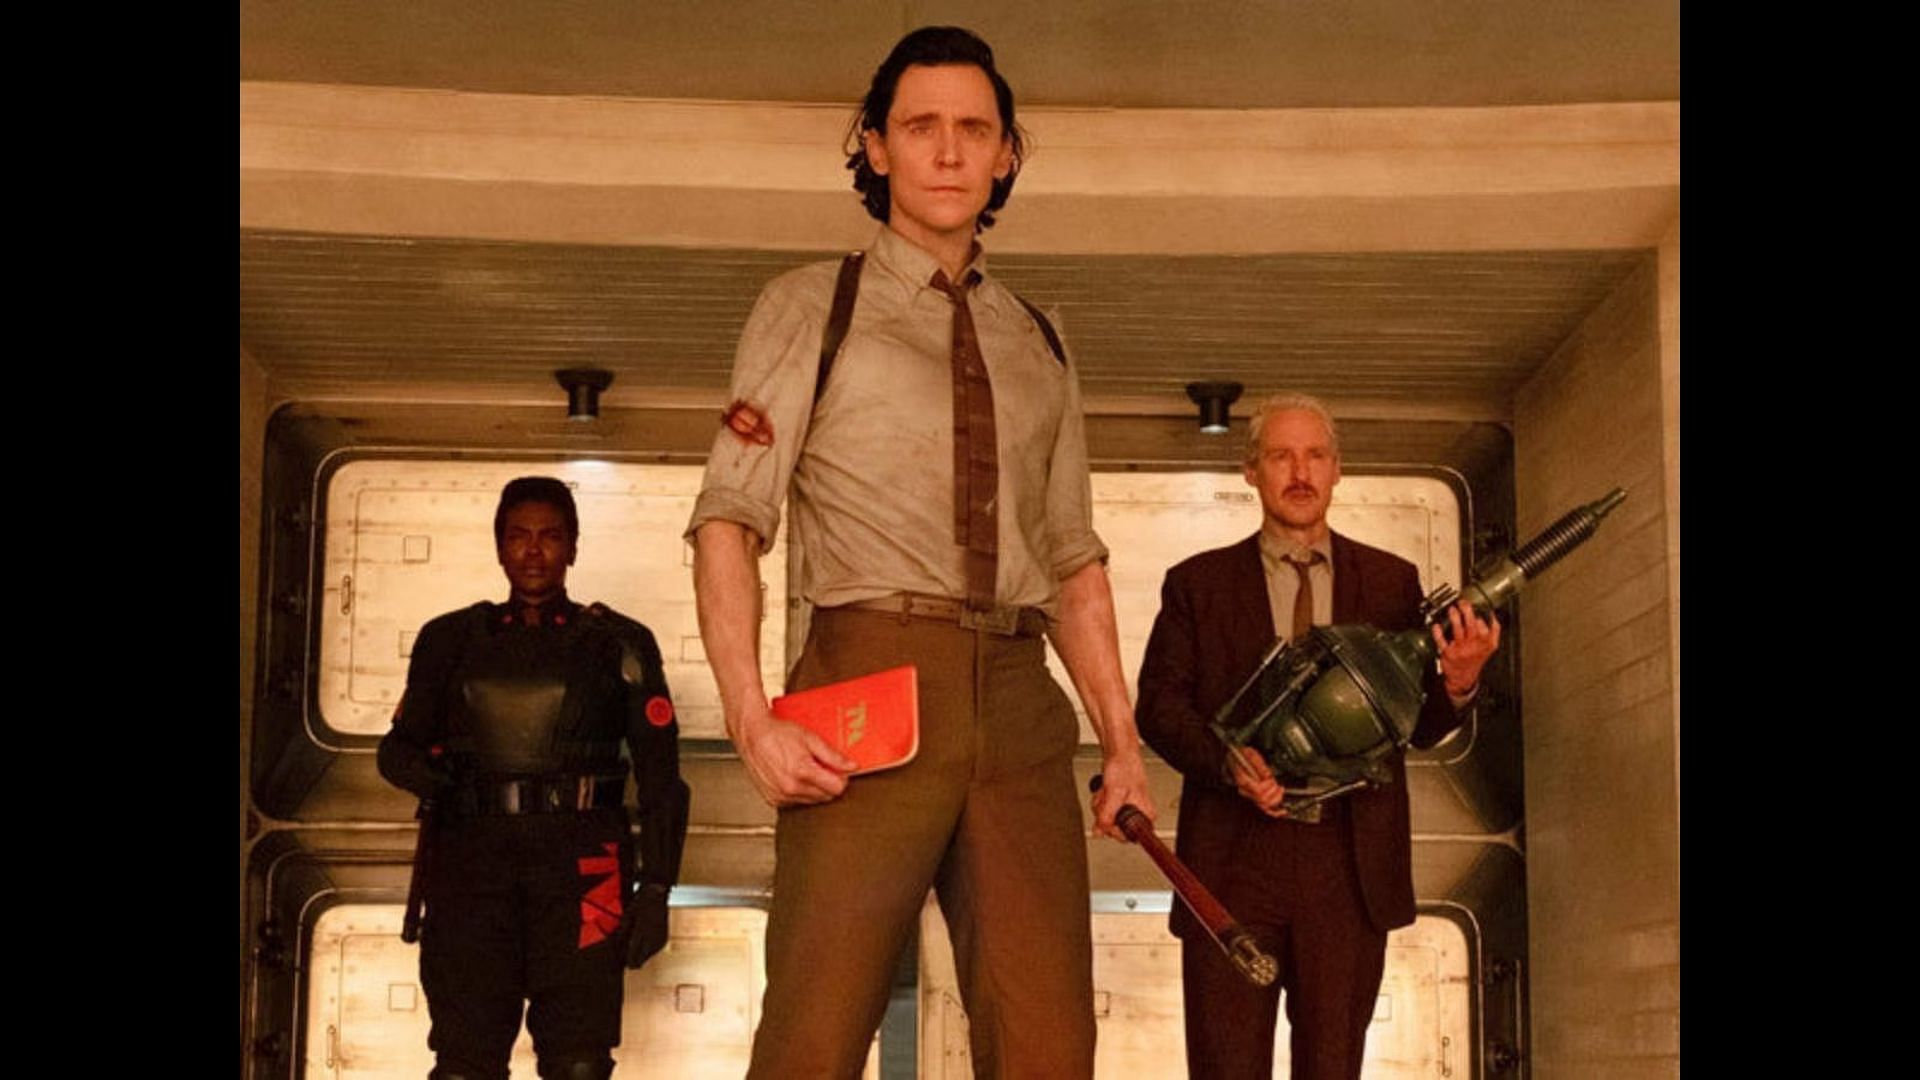 2ª temporada de Loki larga com 81% de aprovação no Rotten Tomatoes -  NerdBunker